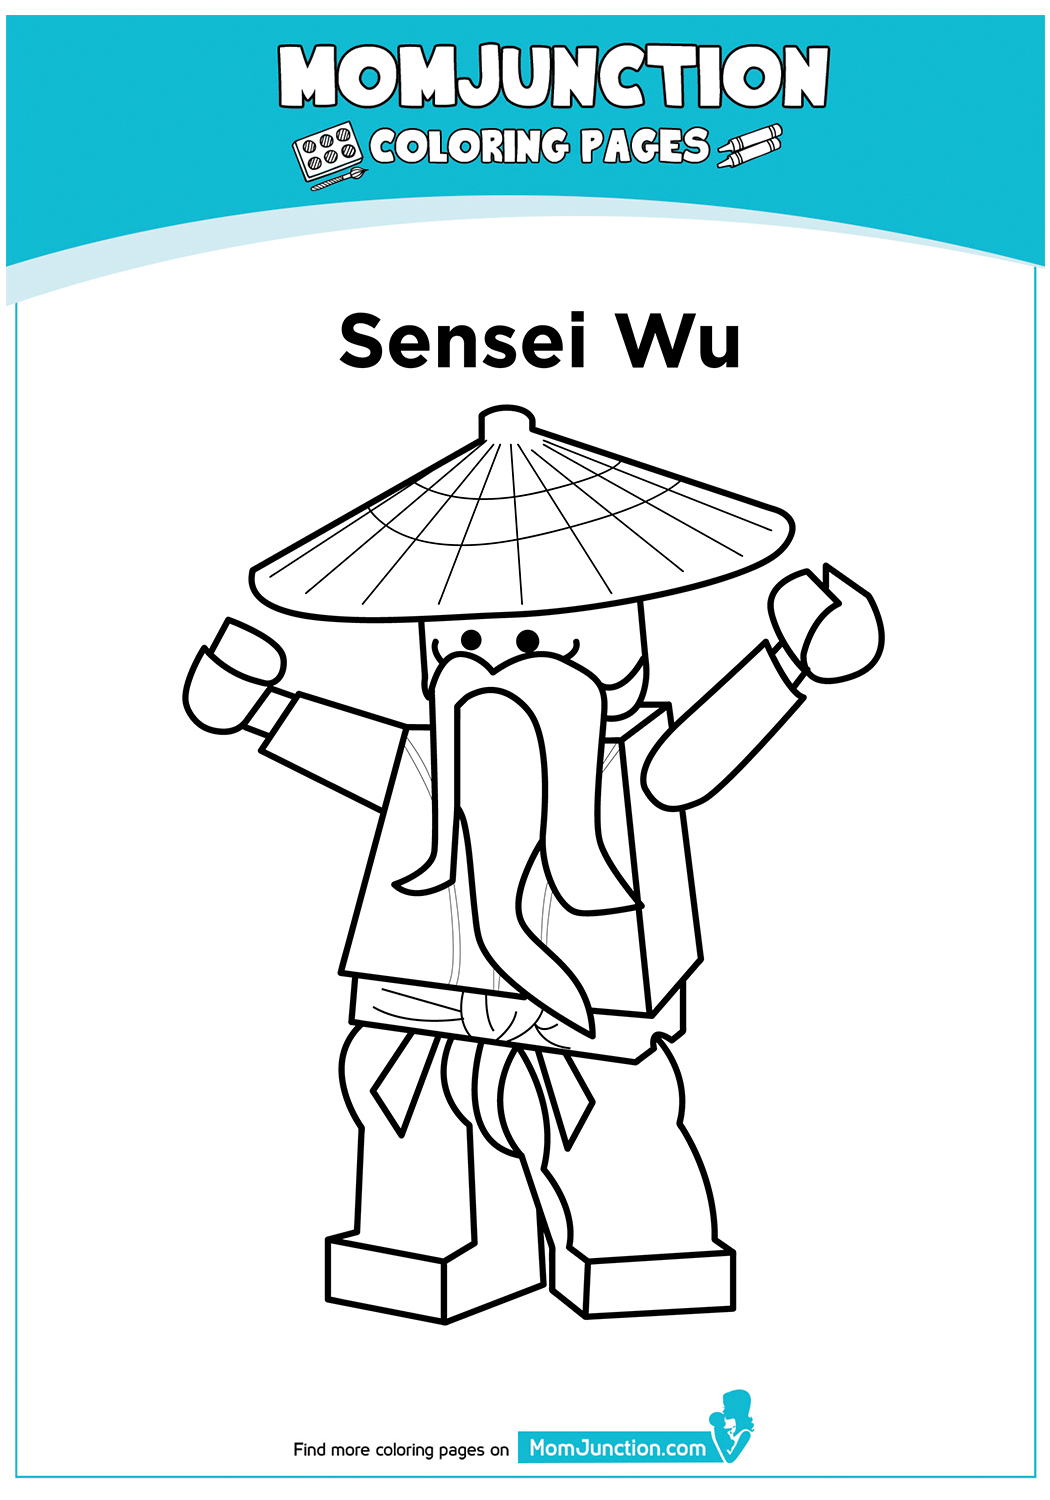 The-Sensei-Wu